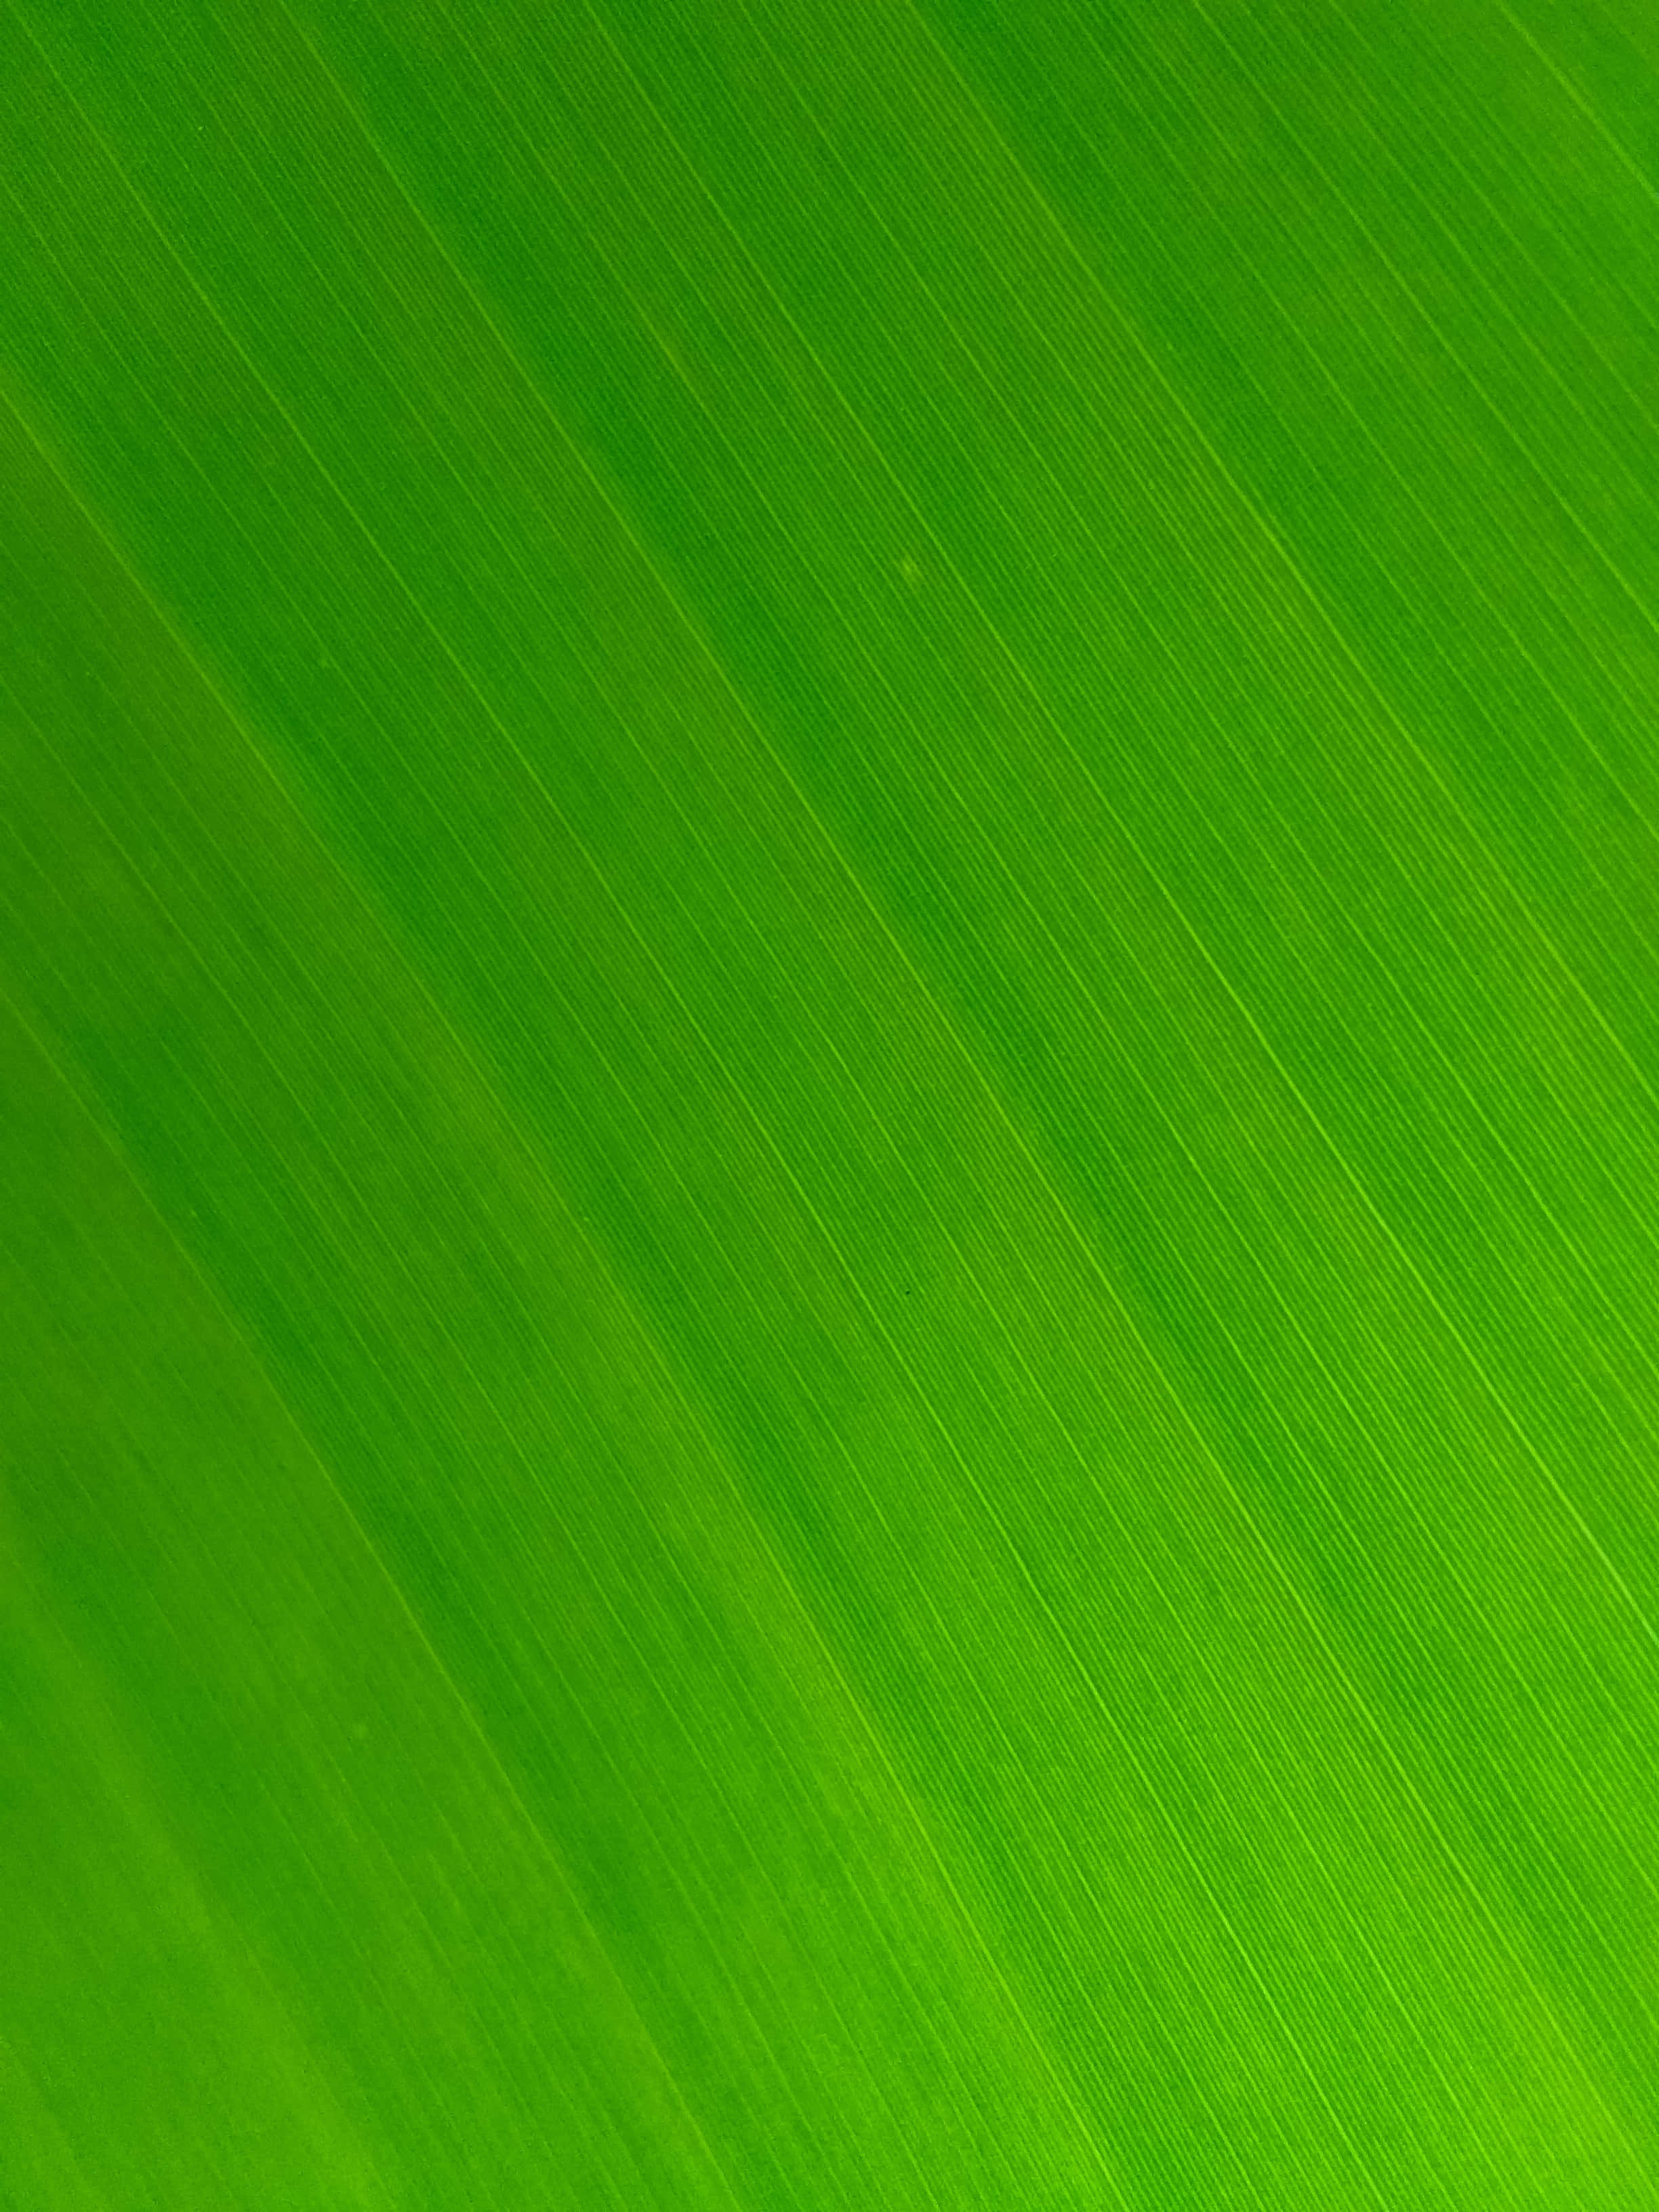 Fondode Textura De Hojas Verdes De Plátano